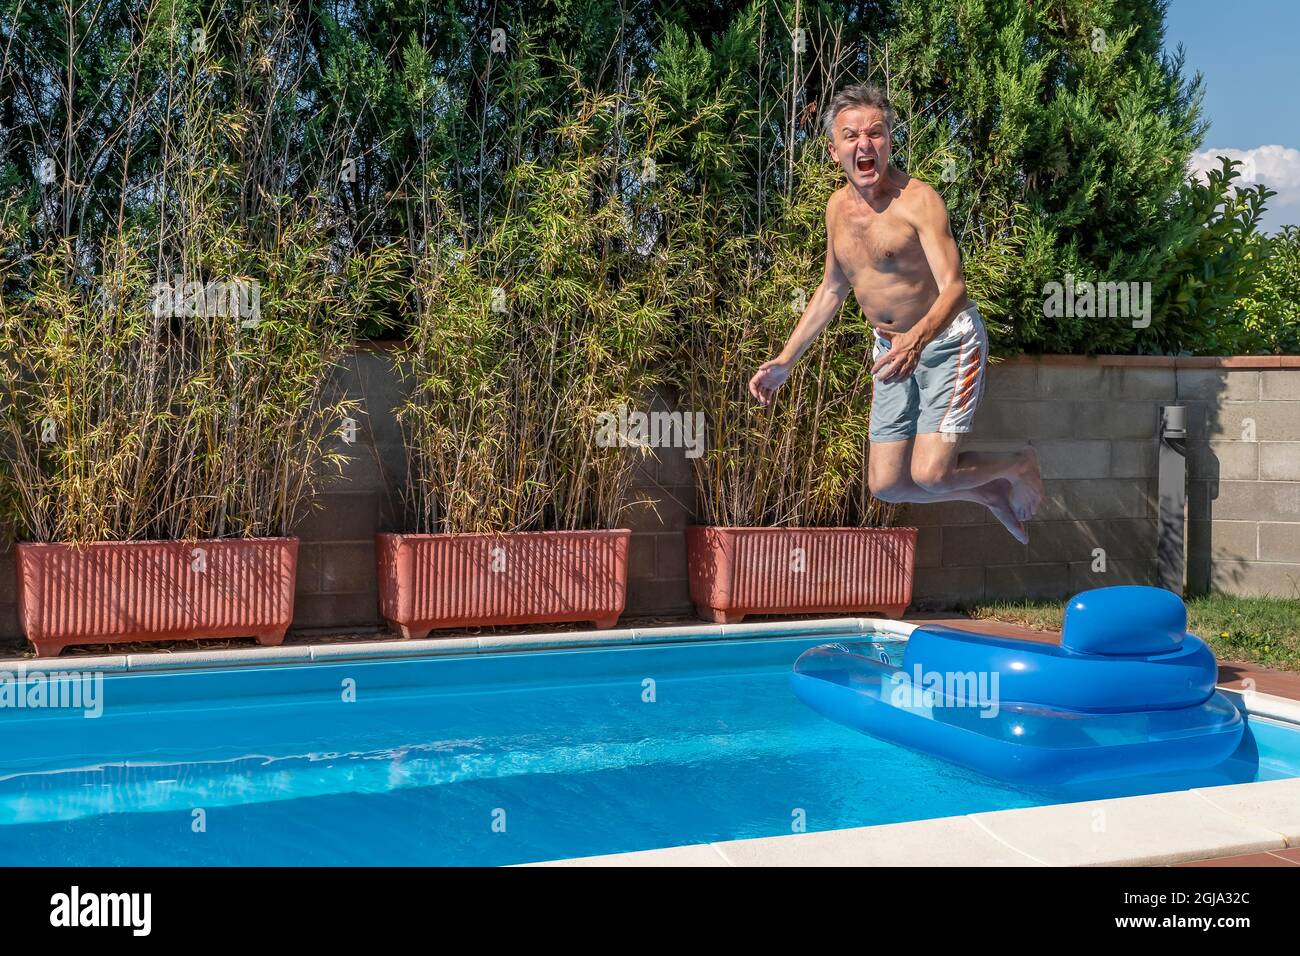 Un homme blanc d'âge moyen plonge dans une piscine, dans un style canonnball, tout en hurlant comme un fou et en sautant au-dessus d'un matelas pneumatique Banque D'Images